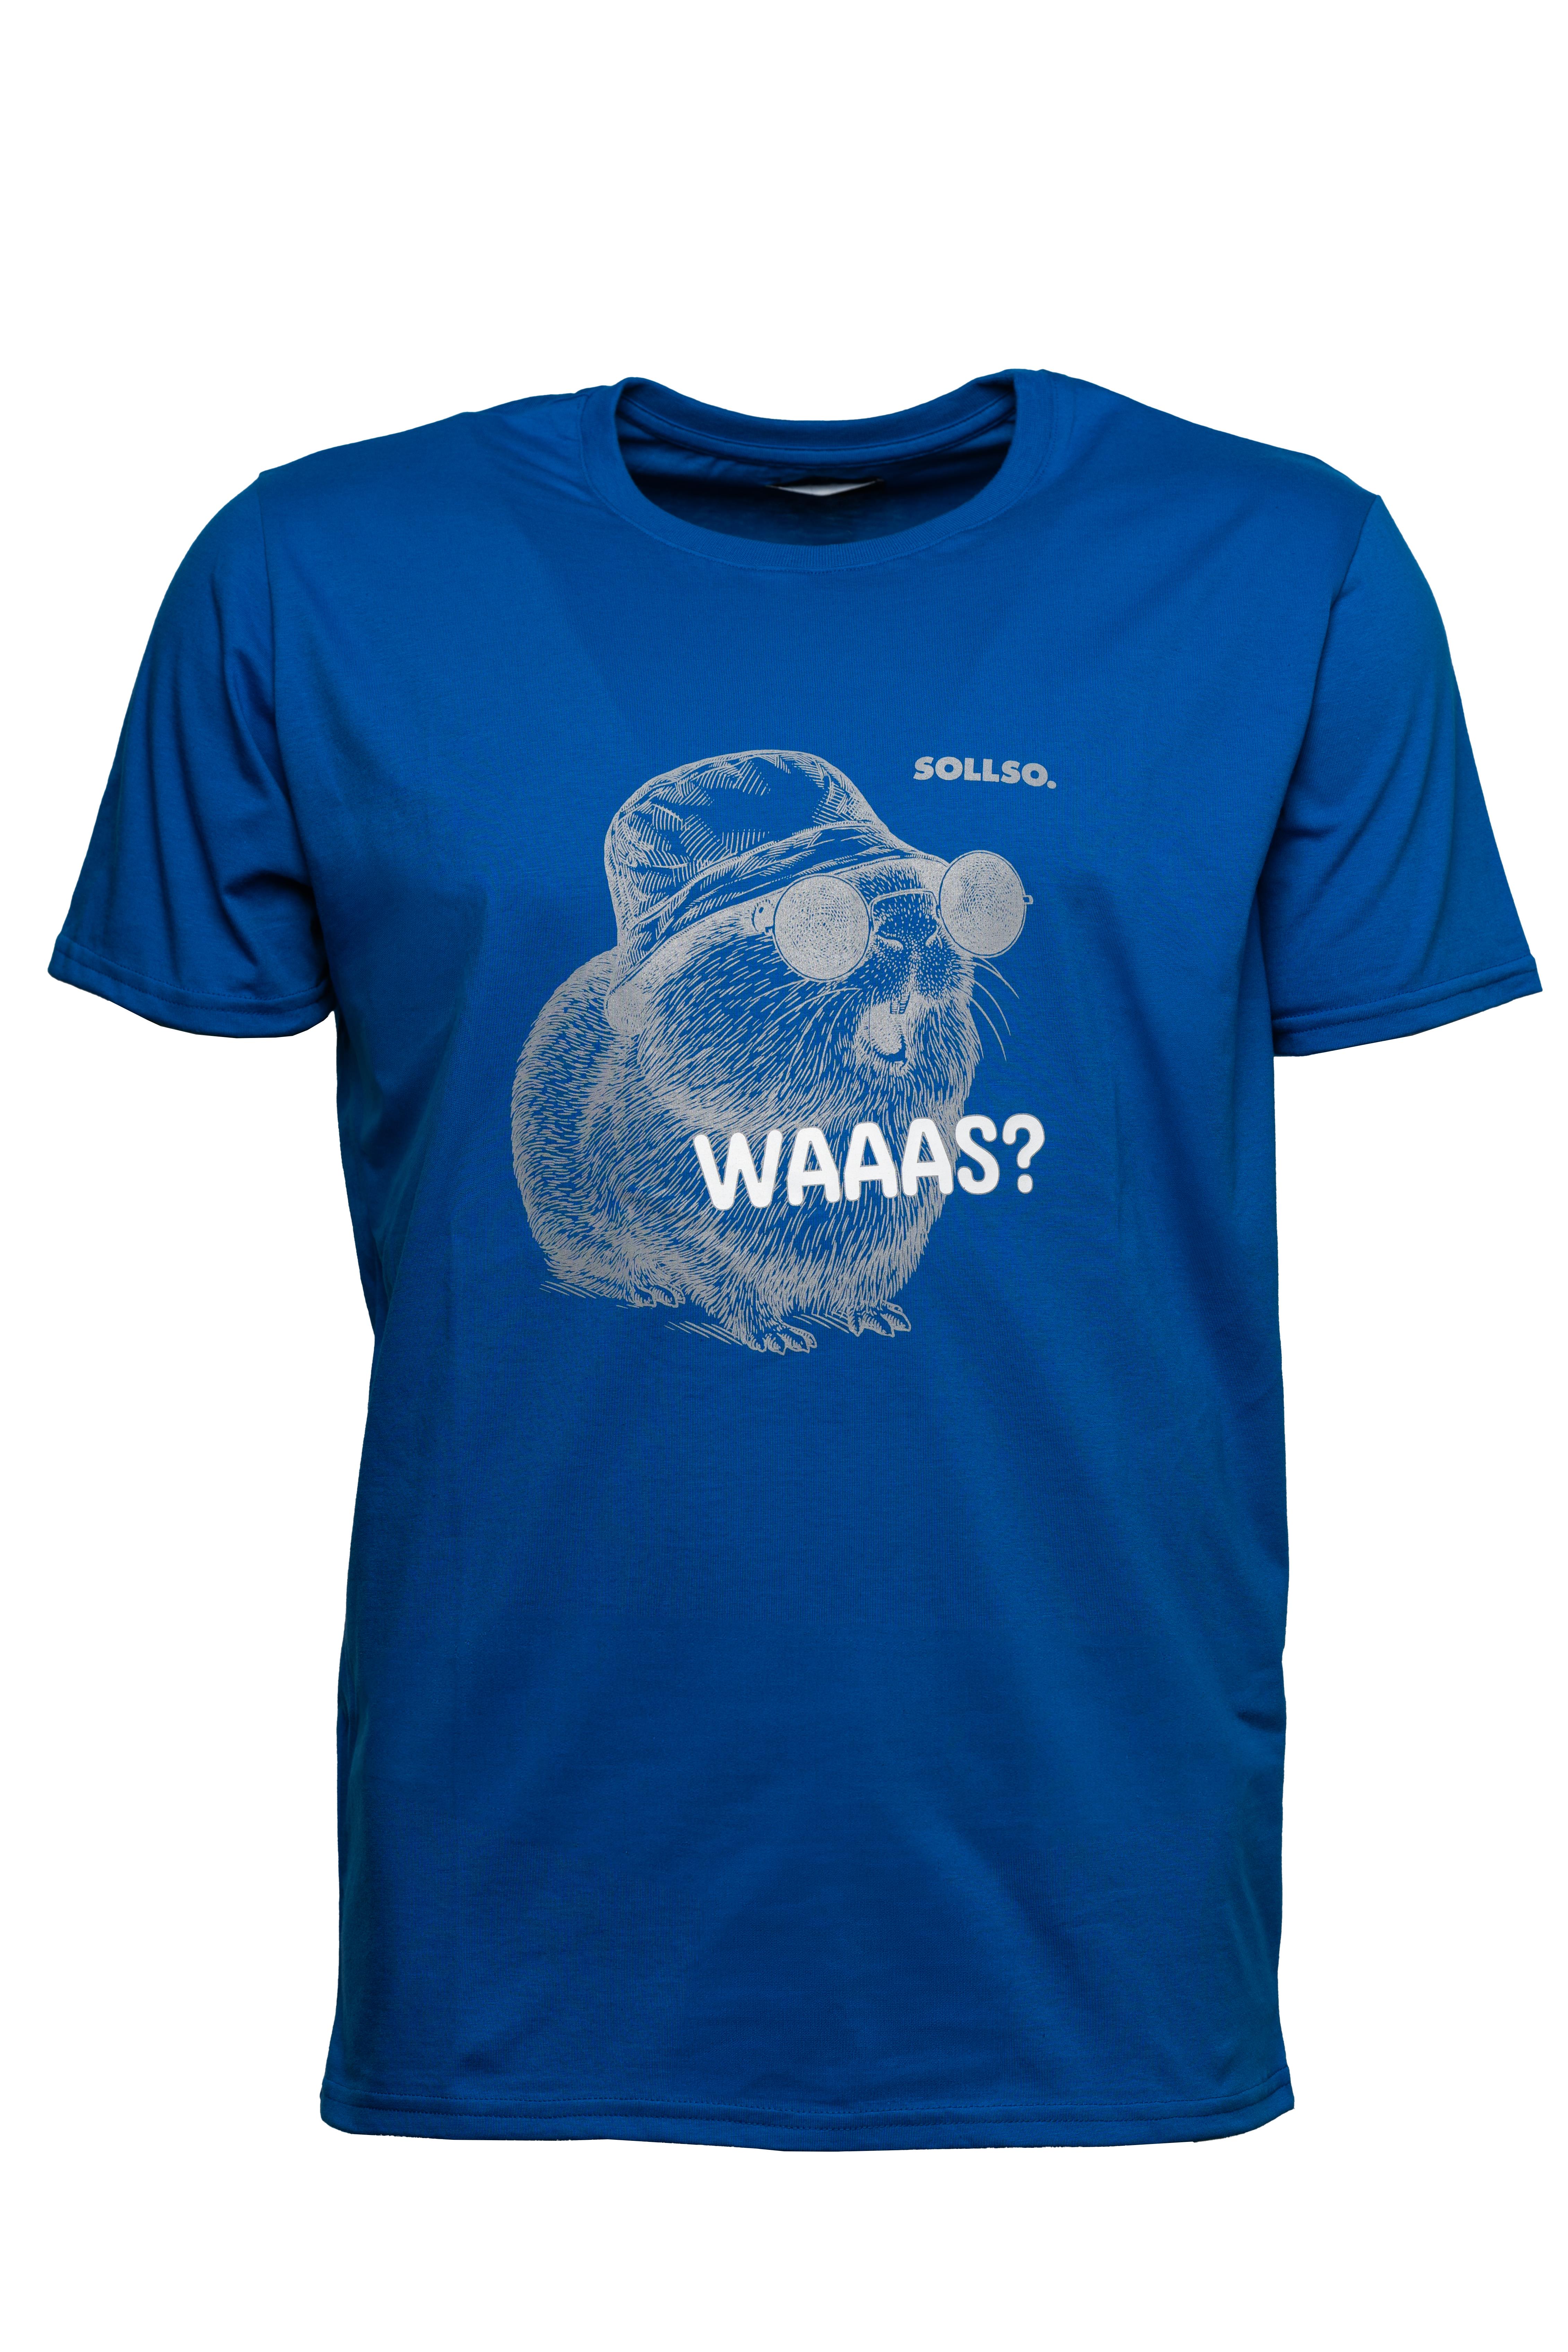 SOLLSO. T-Shirt "Guinea Pig" Farbe Ocean Blue, Größe 6XL